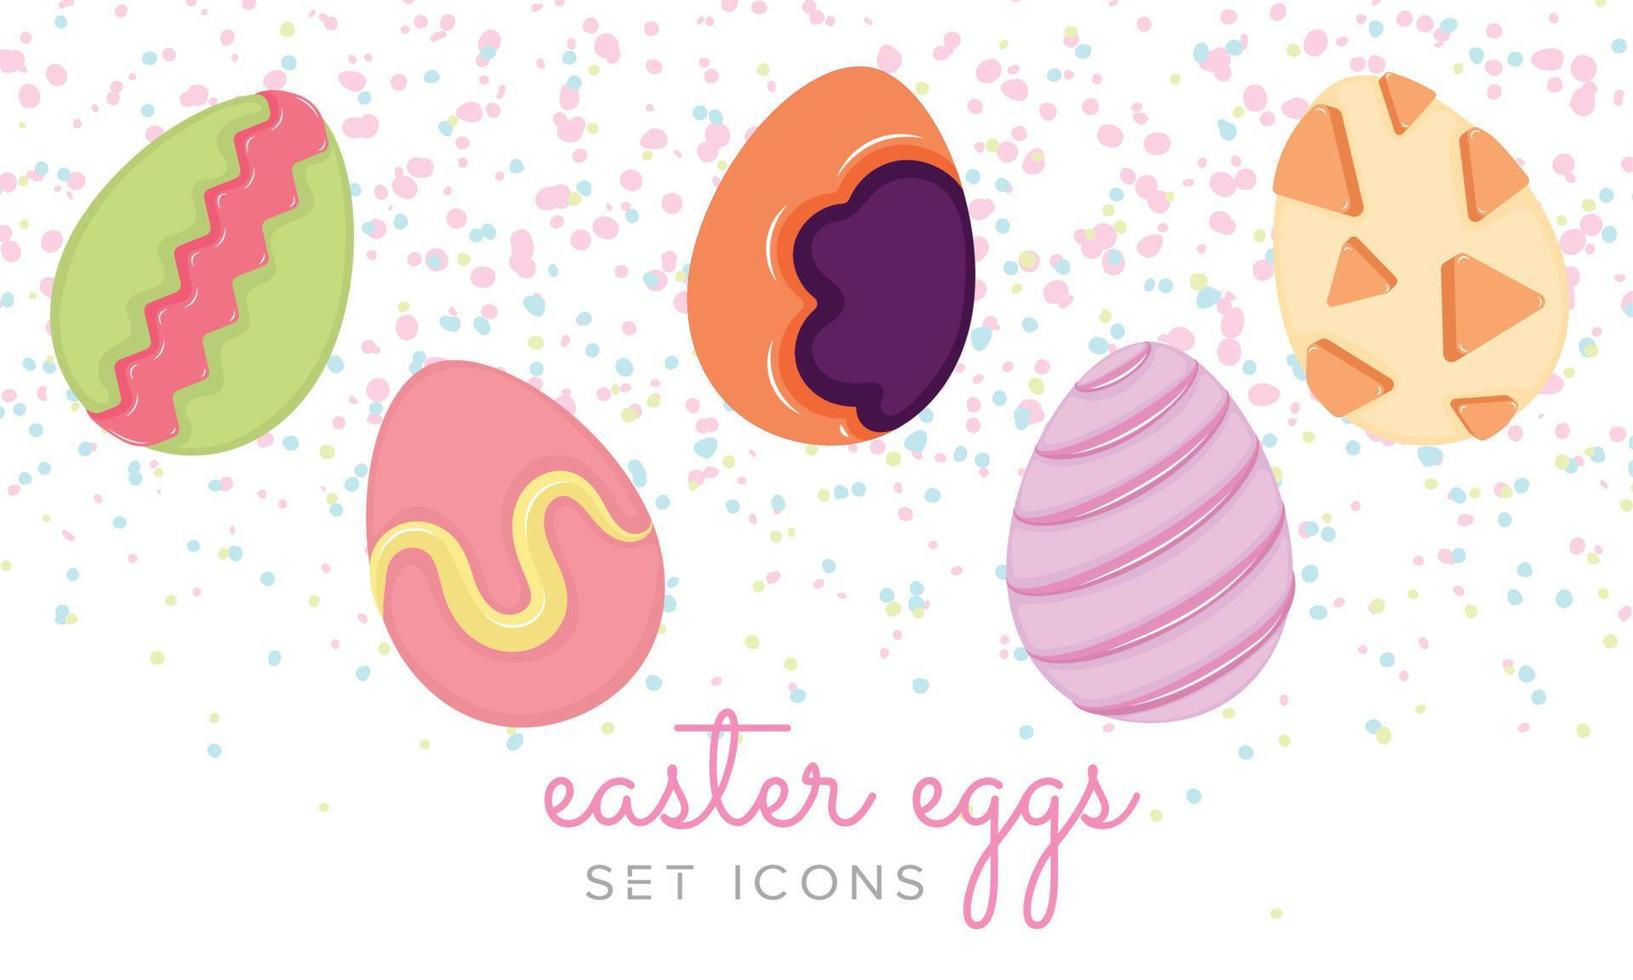 tradizionale colorato Pasqua uova icone impostato vettore